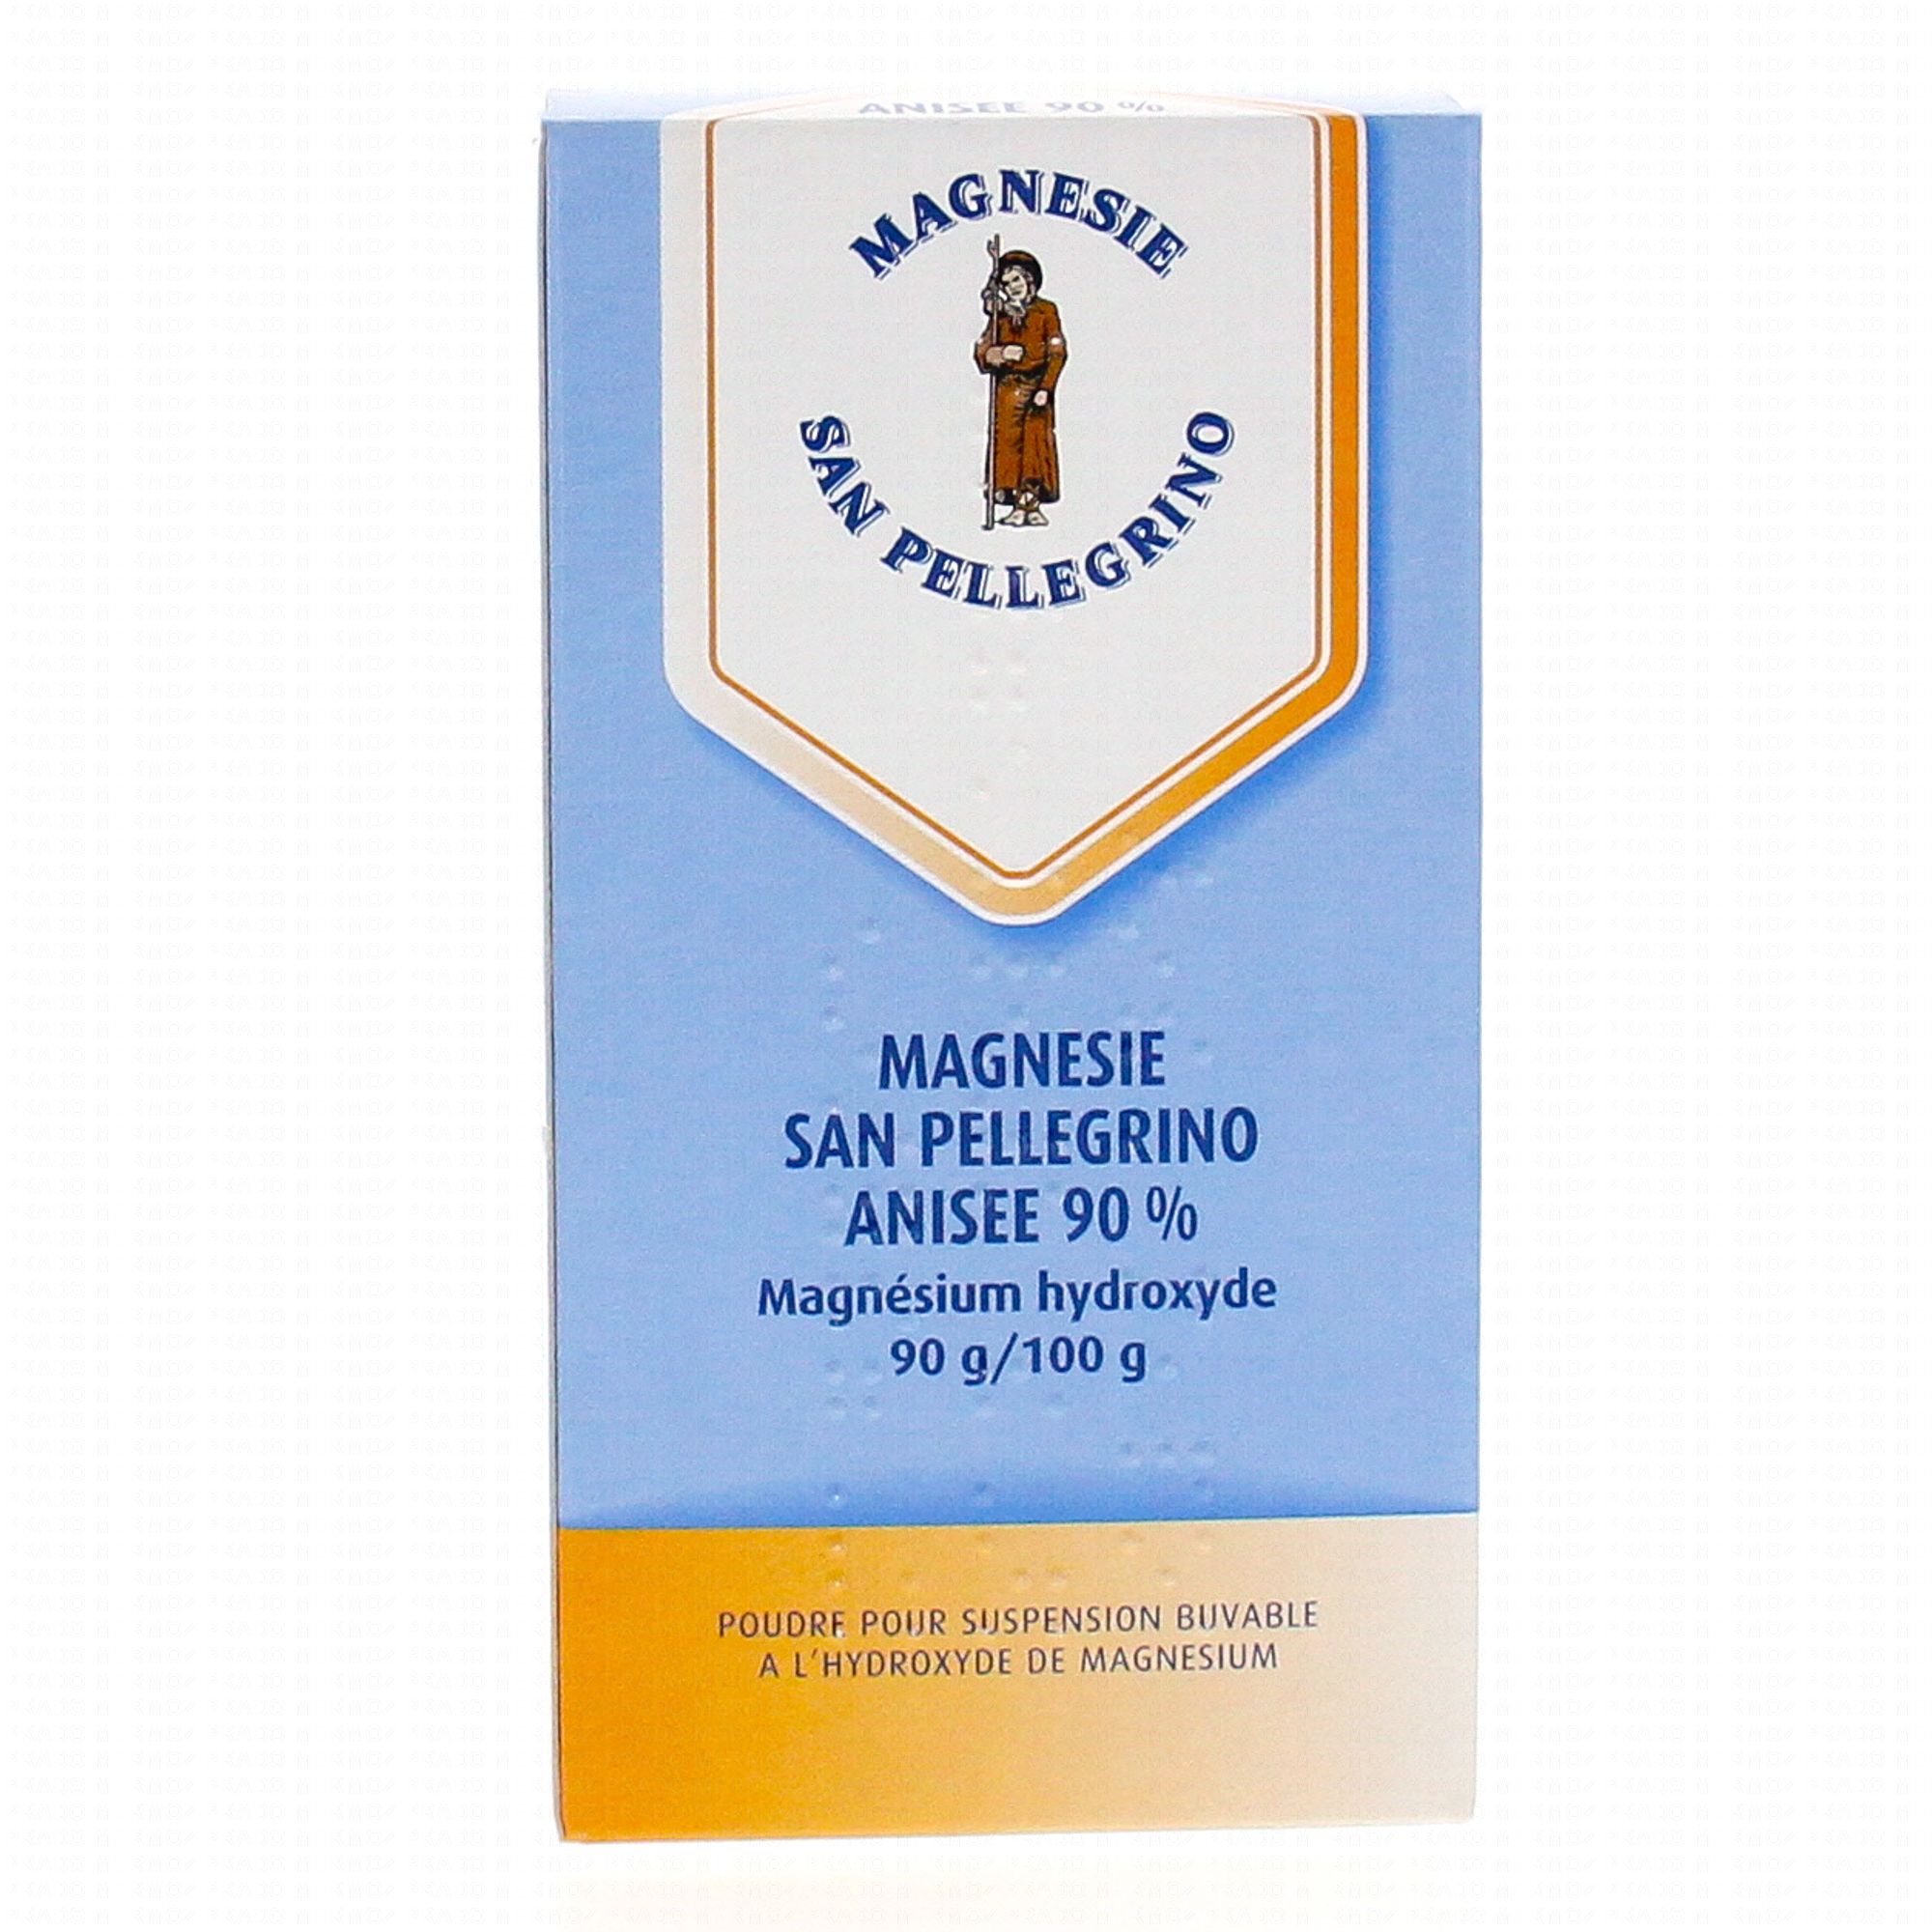 Magnésie San Pellegrino anisée 90% poudre orale 90g - Médicament conseil -  Pharmacie Prado Mermoz